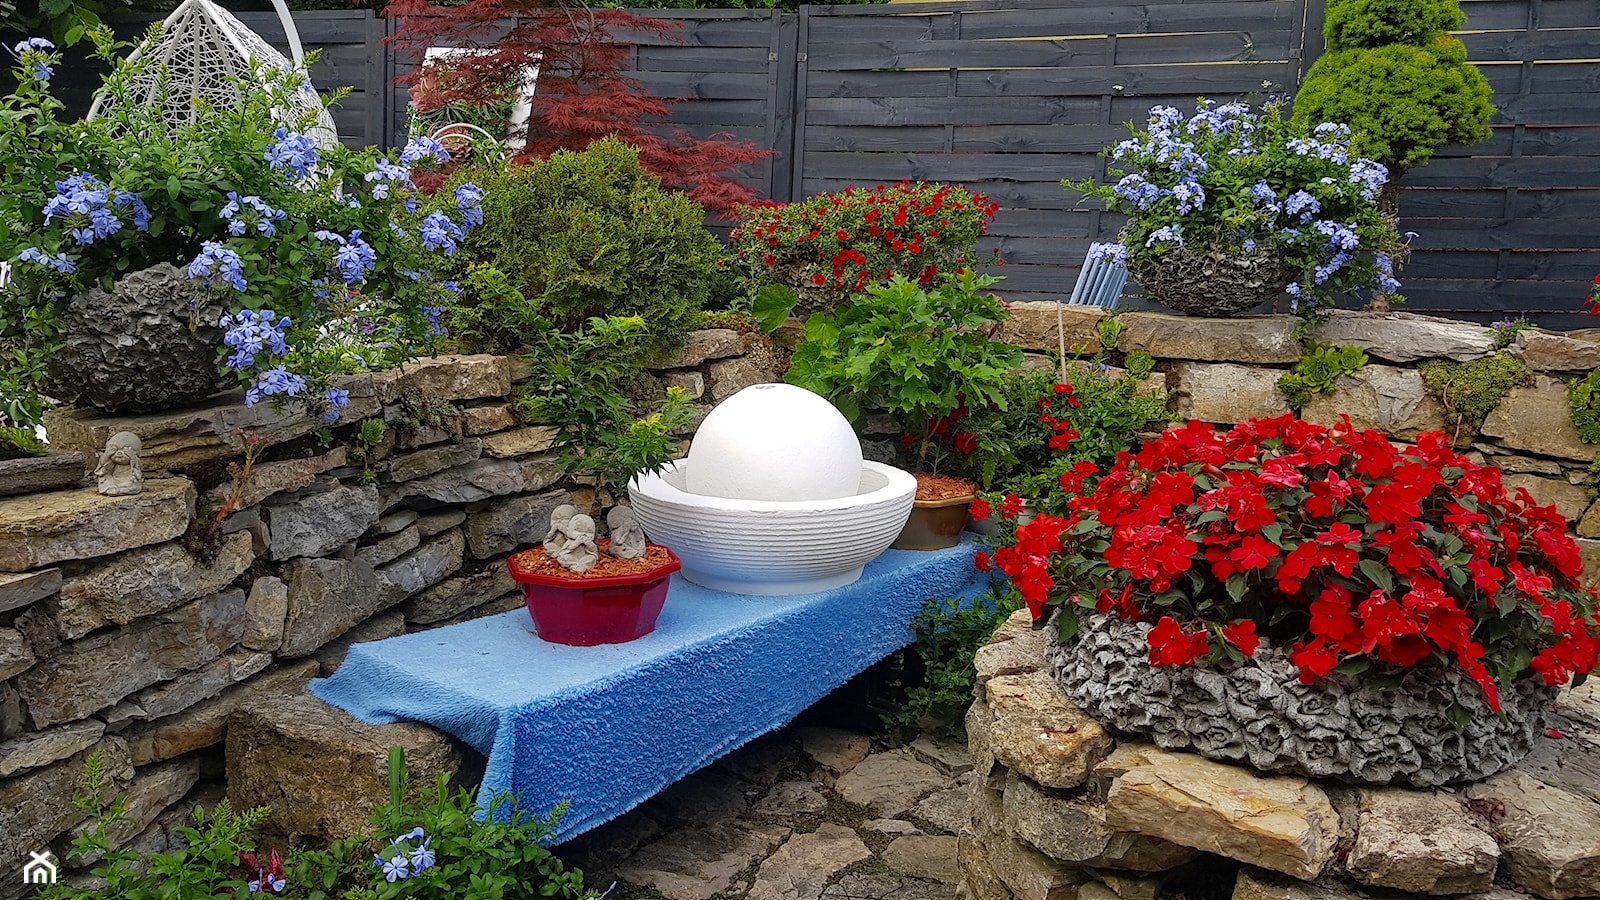 Kule betonowe ozdoby do ogrodu -ozdoby ogrodowe dekoracje ogrodowe -dekoracje do ogrodu -mój ogród ... - zdjęcie od Ewa Tyrna - Homebook